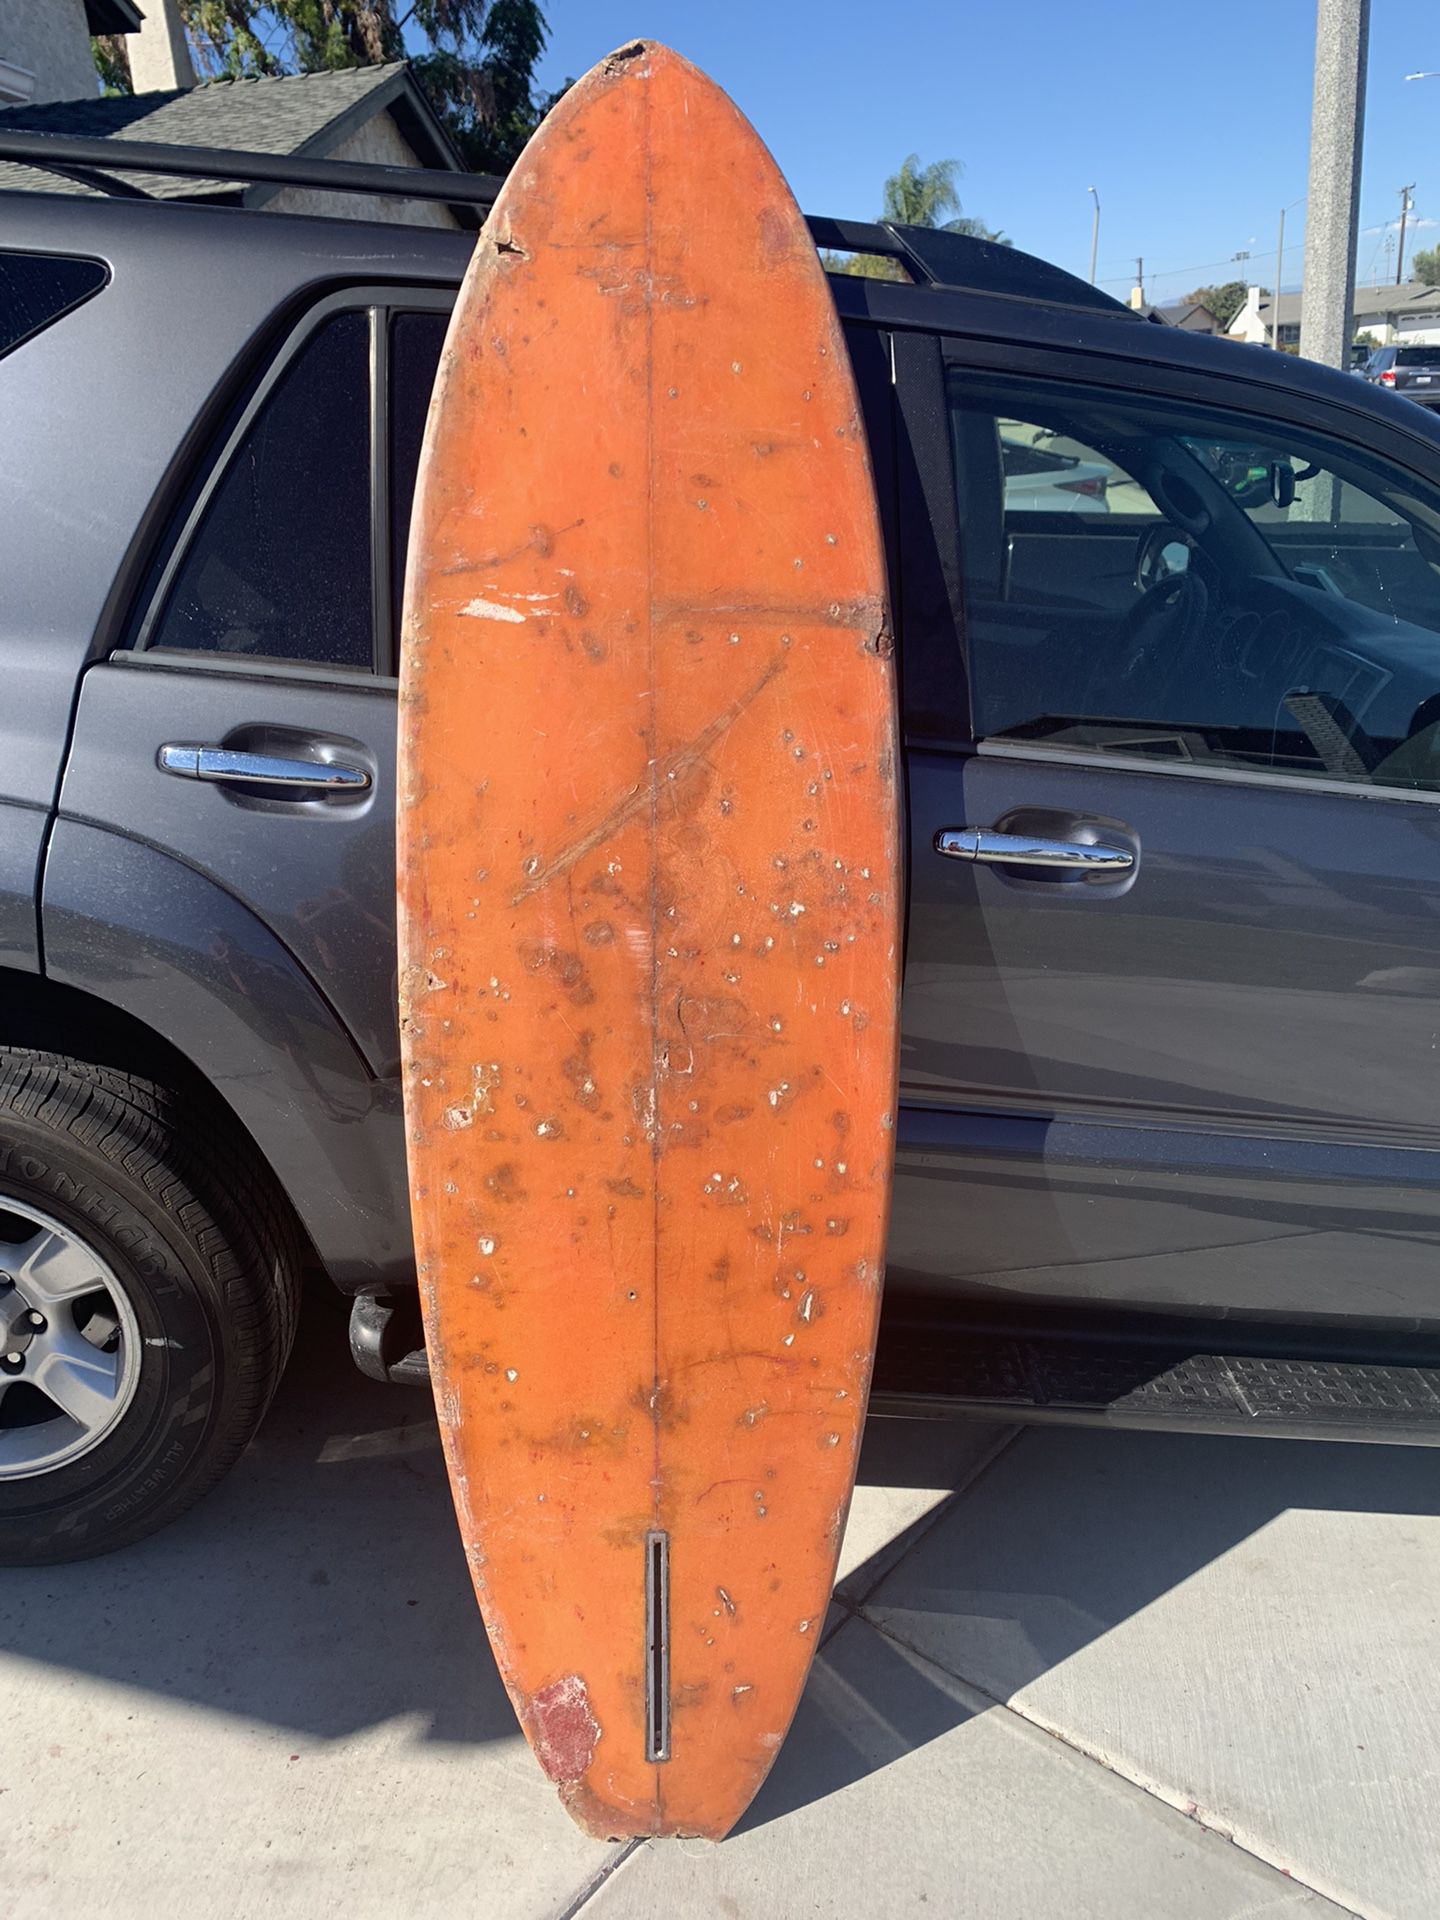 Used Surfboard